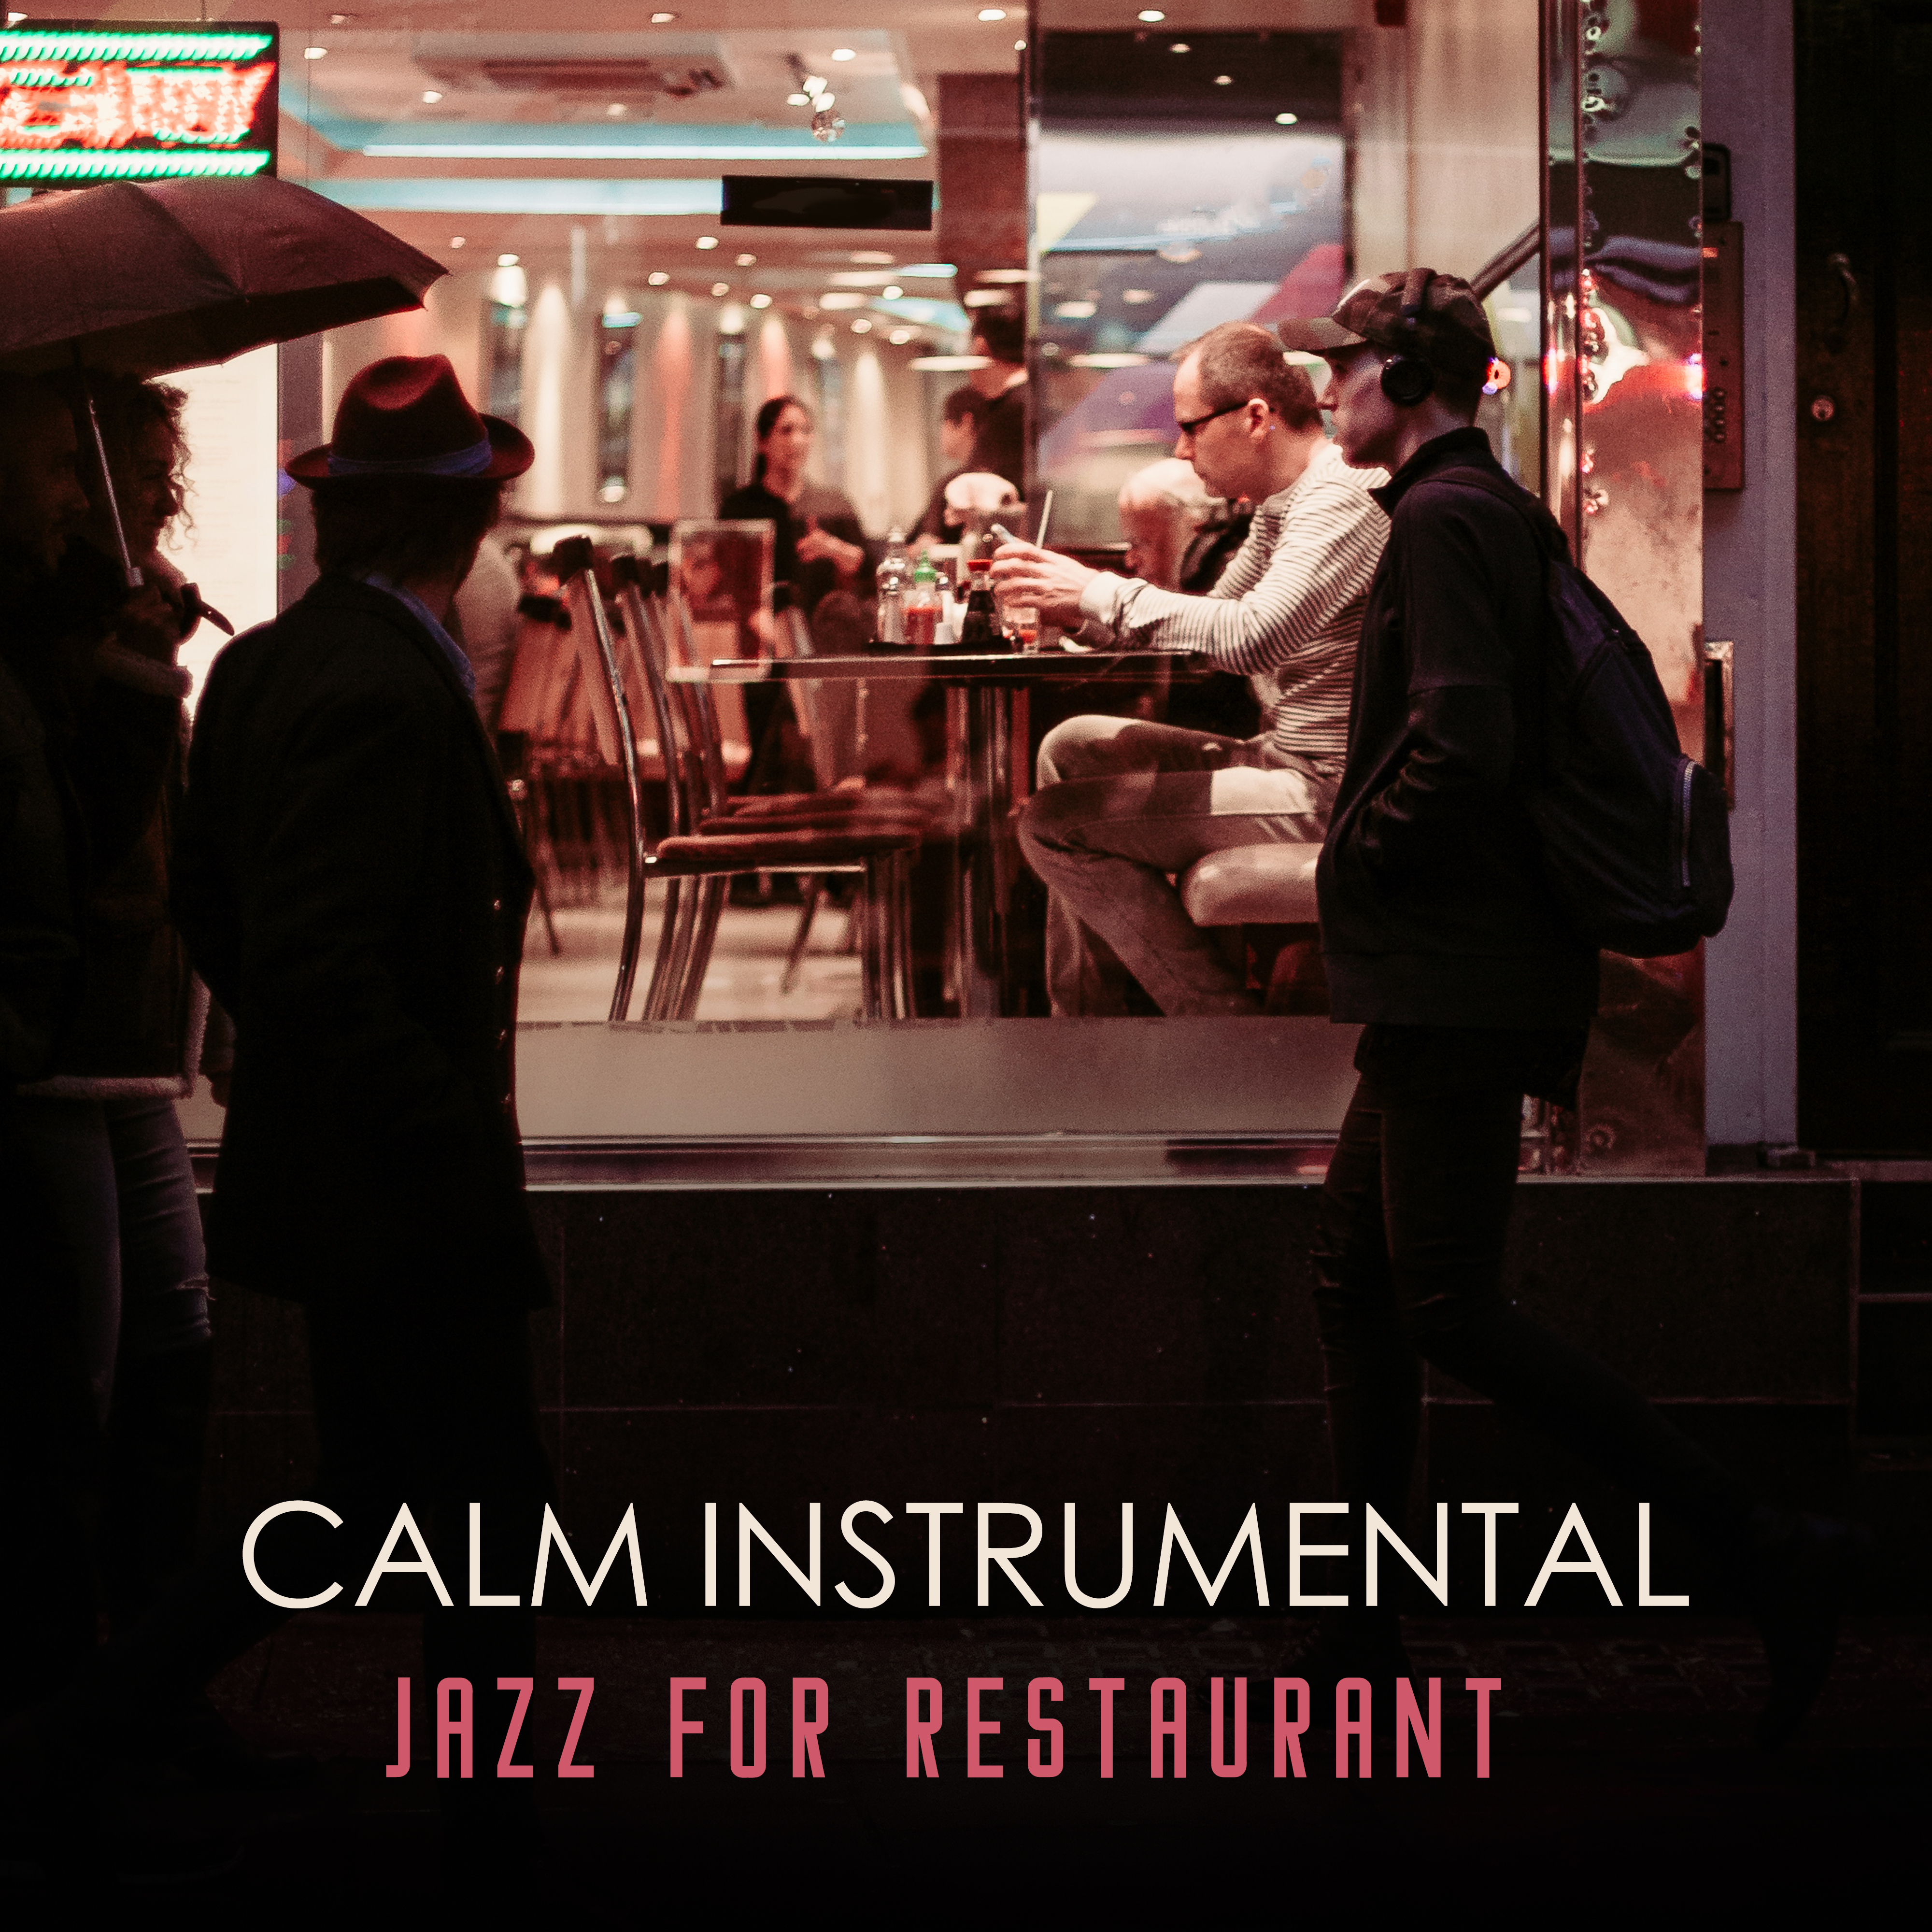 Calm Instrumental Jazz for Restaurant